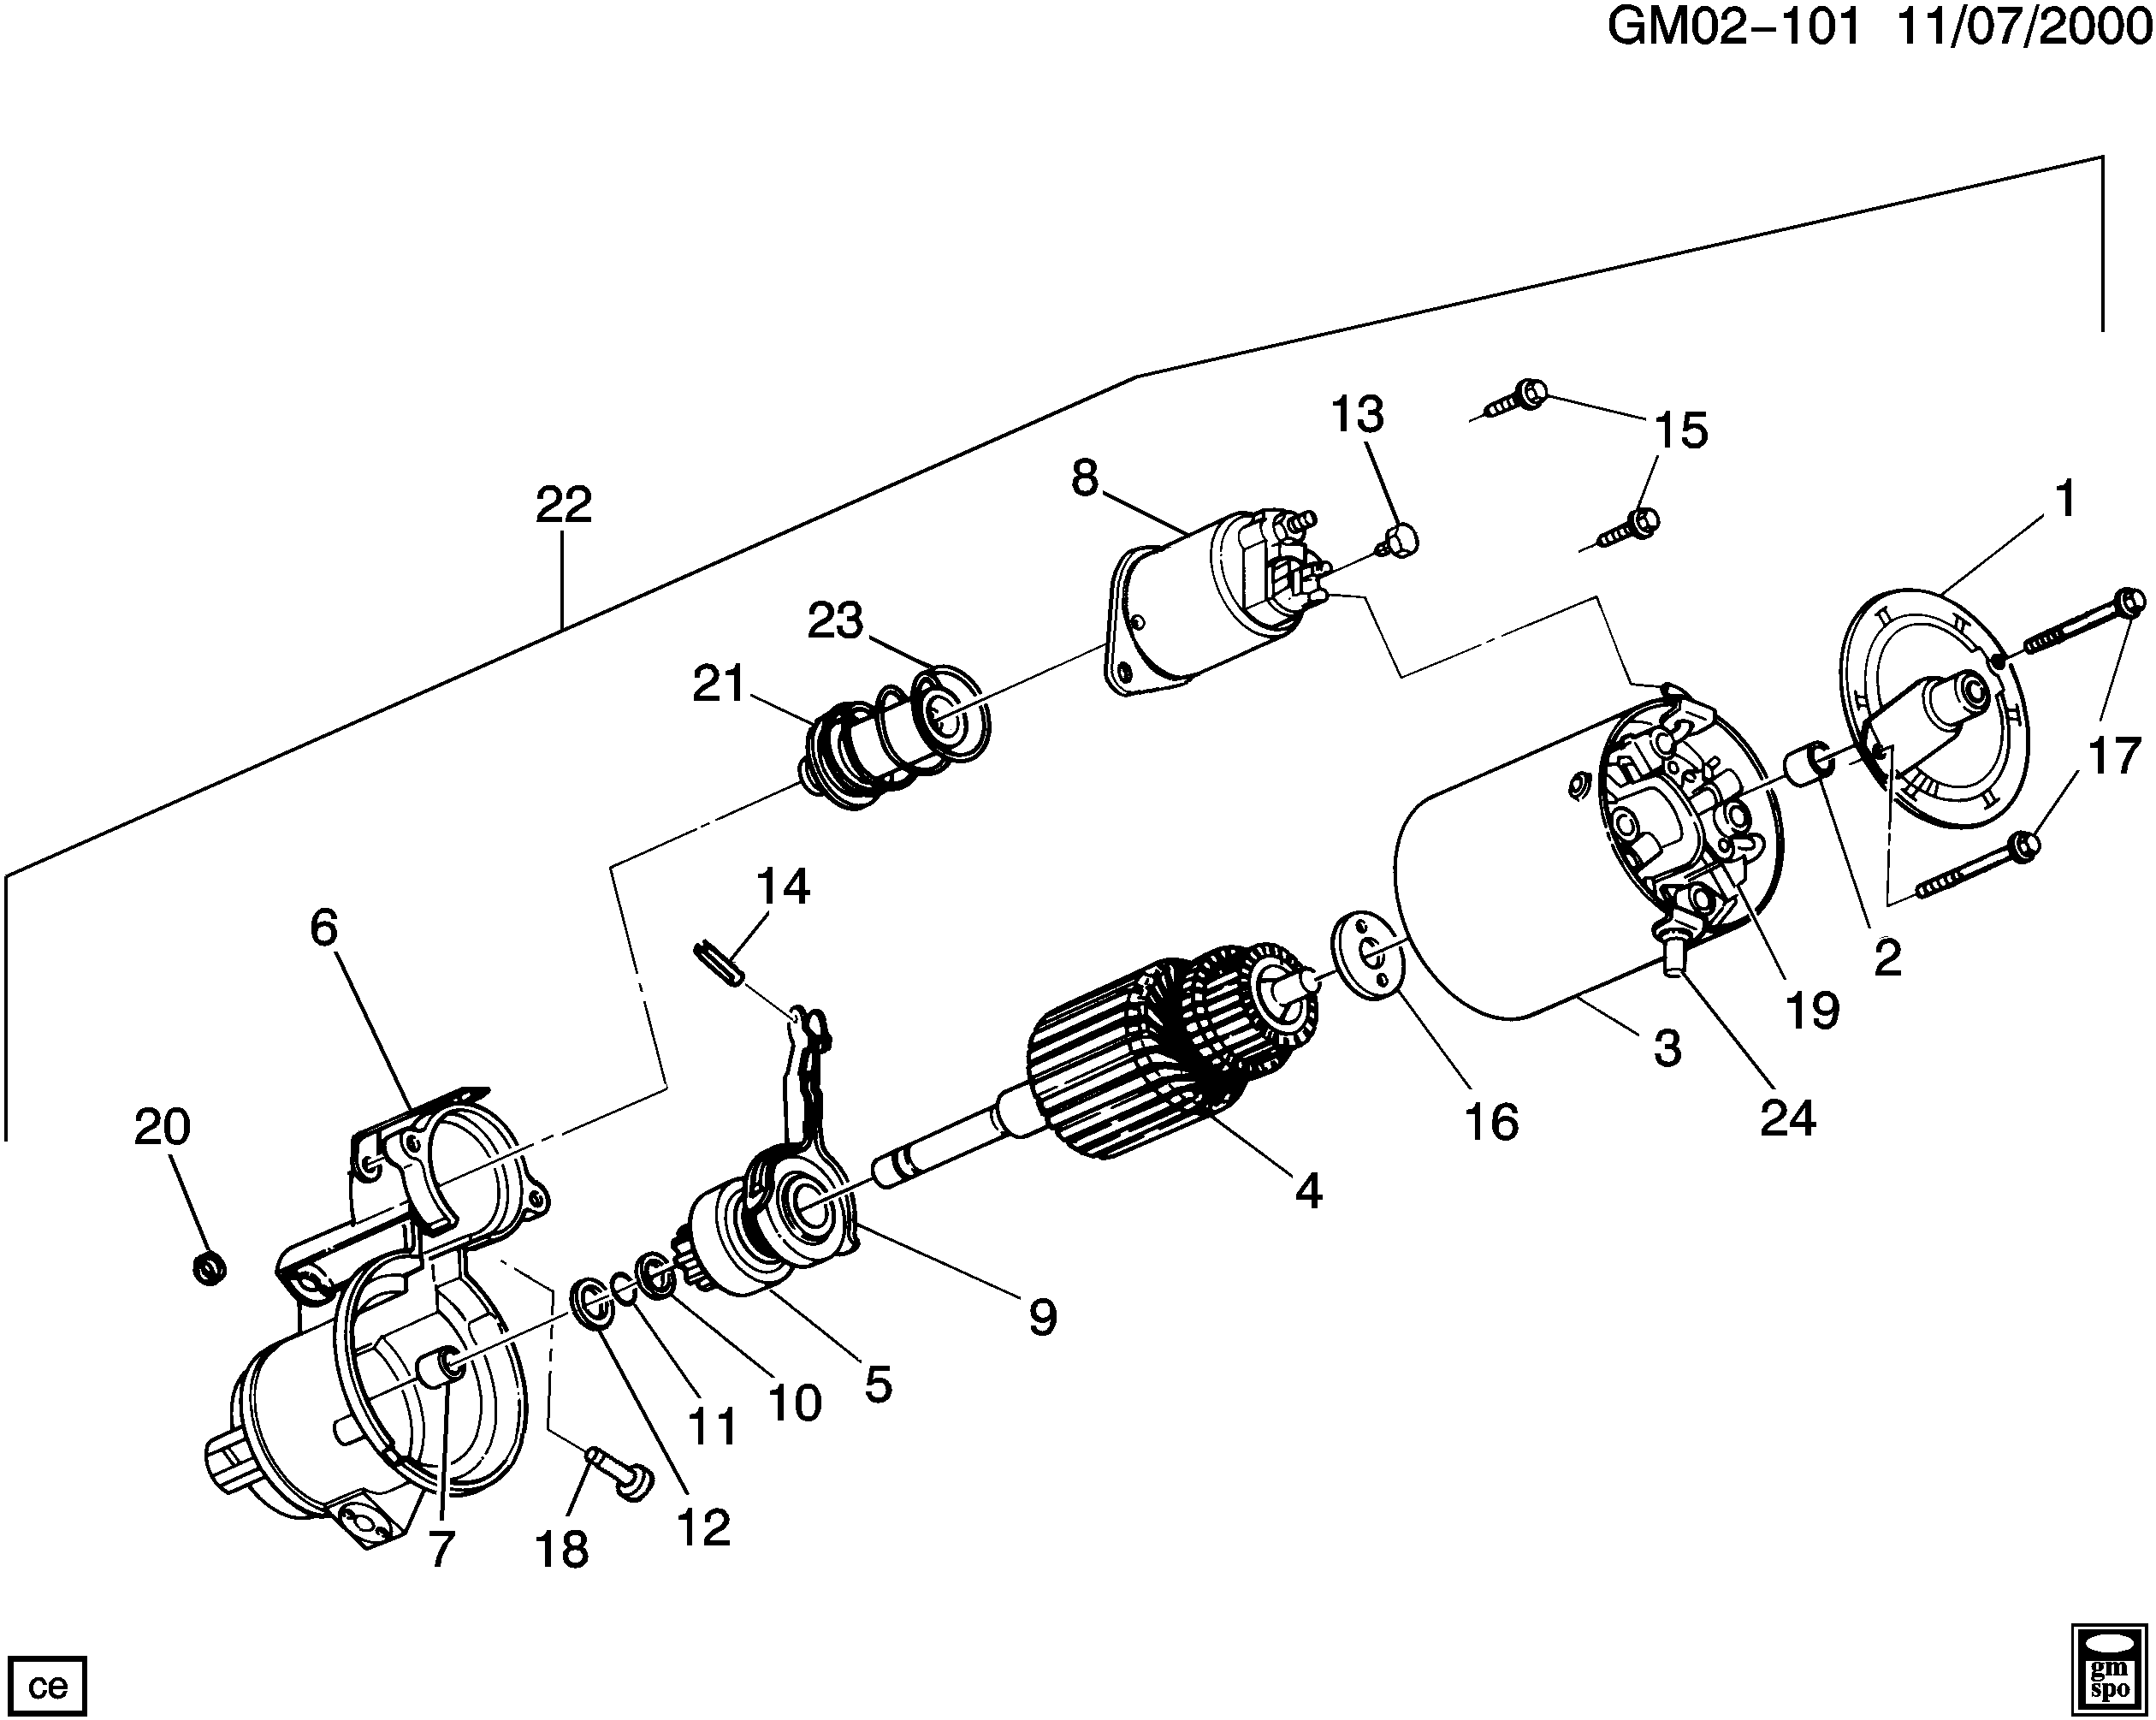 1996-1996 C STARTER MOTOR (L67/3.8-1)